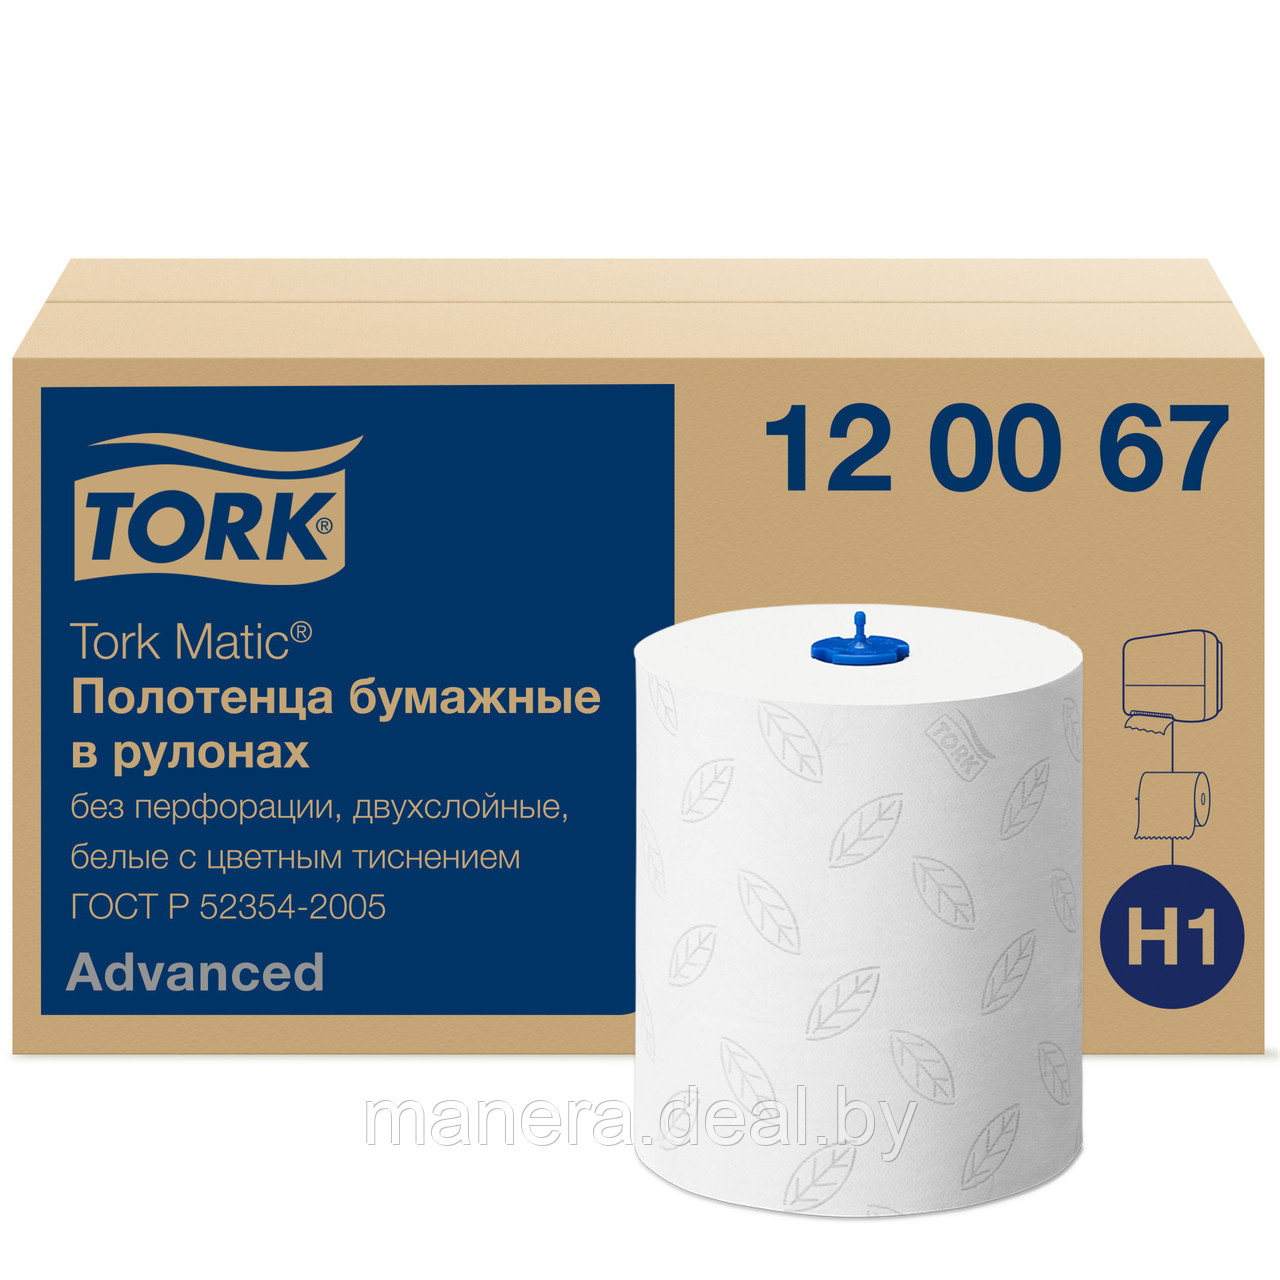 Полотенца бумажные TORK Matic Advanced в рулонах, Н1